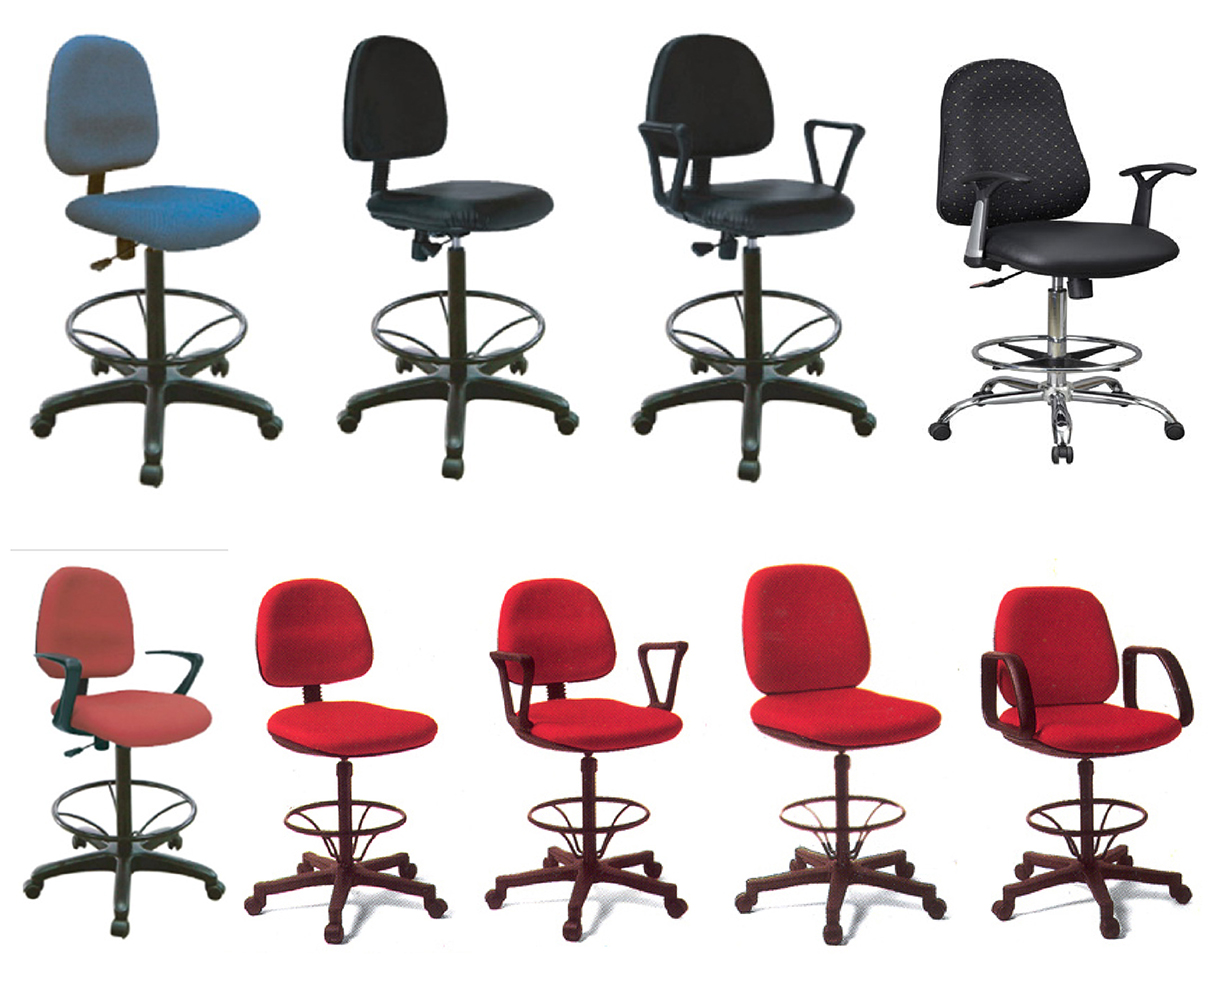 เก้าอี้สำนักงานขาสูง Office Bar Chairs